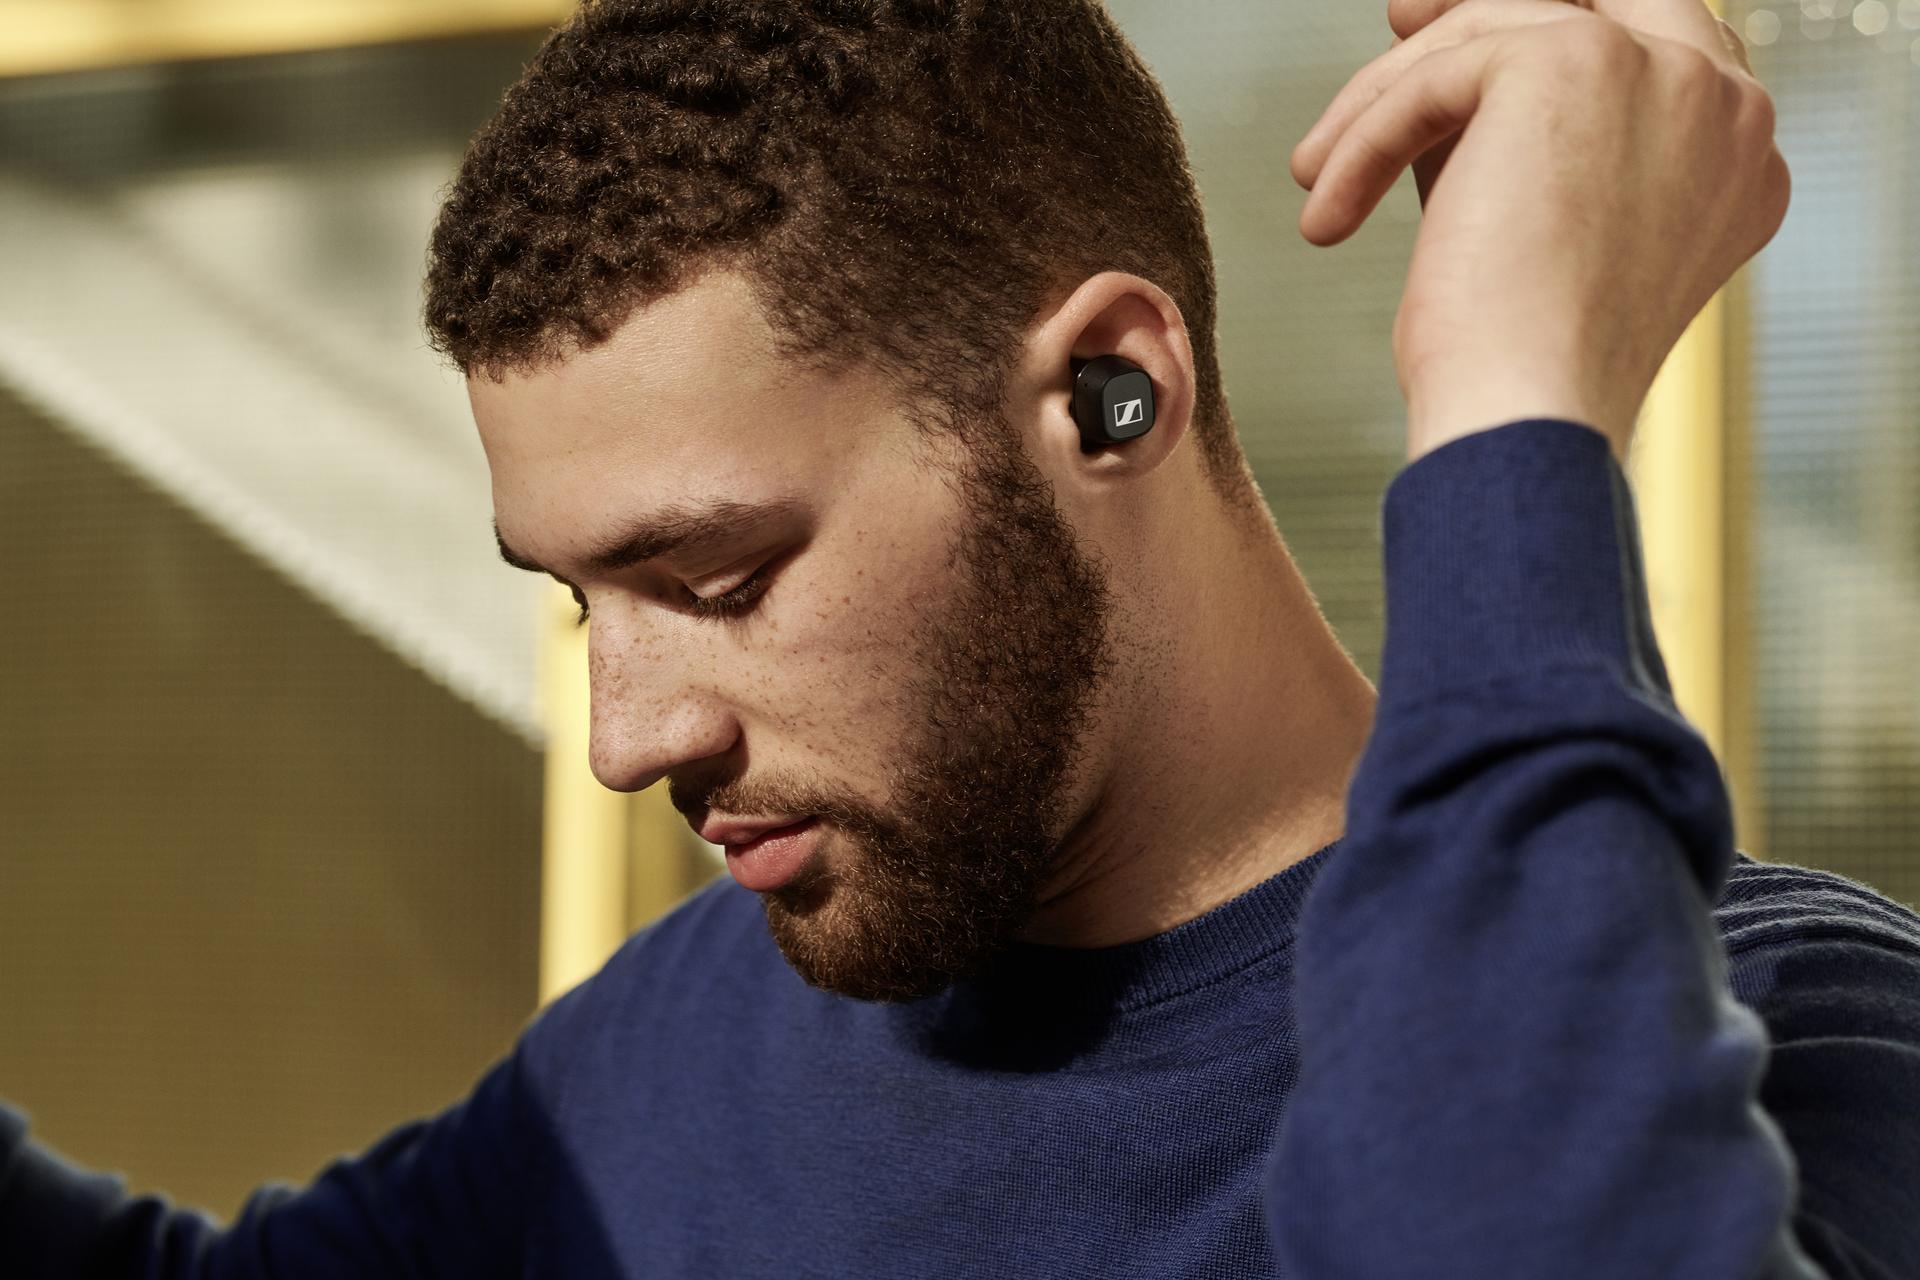 Sennheiser verkauft sein Consumer-Geschäft an den Hörgerätehersteller Sonova (und vielleicht ist das die richtige Entscheidung)